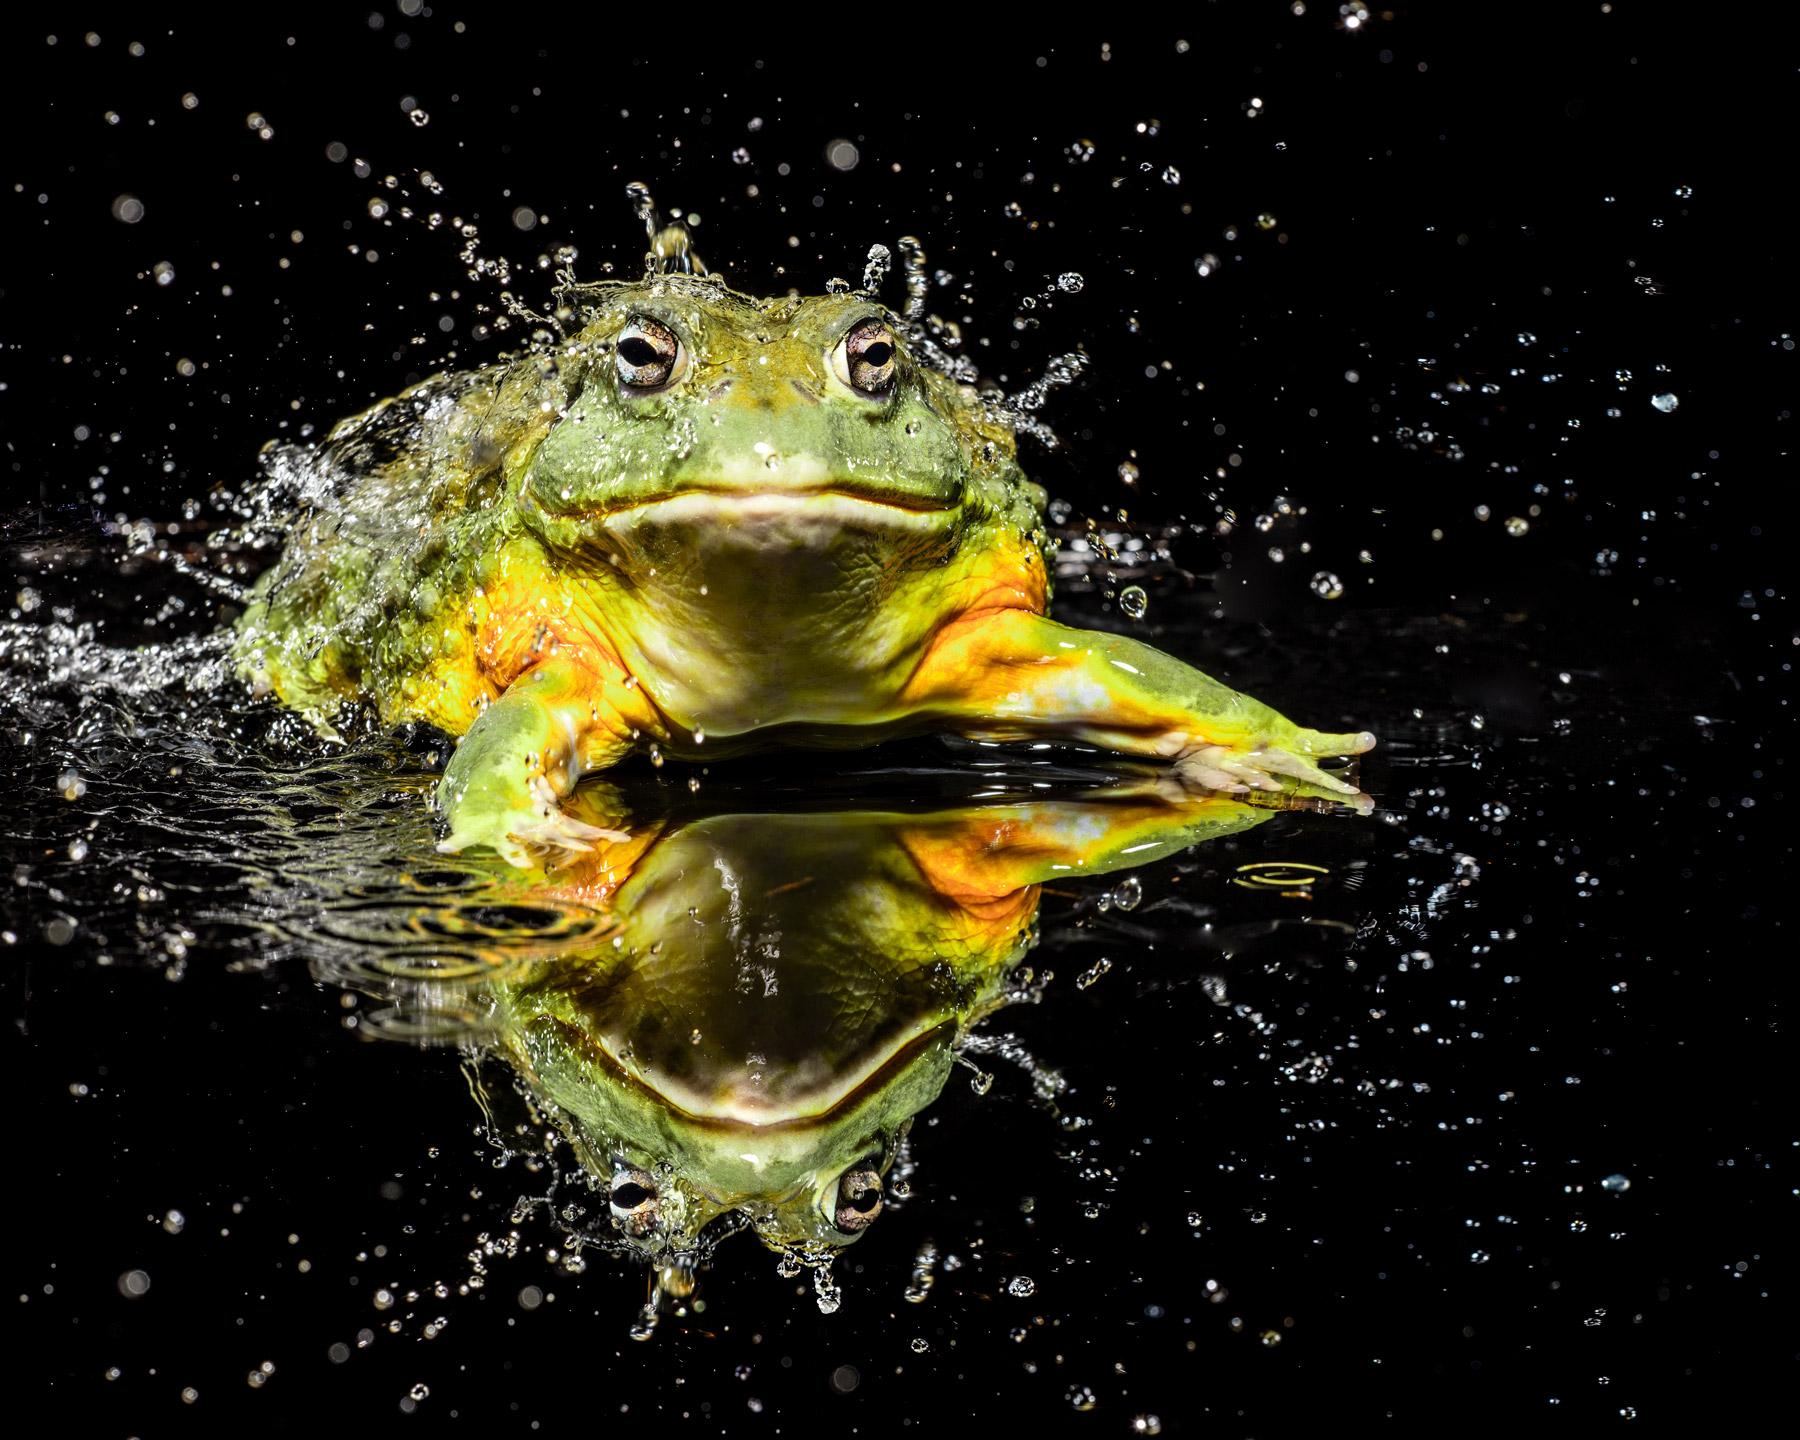 Tim Platt Still-Life Photograph - Bullfrog #1 - Signed limited edition wildlife fine art, Contemporary Portrait